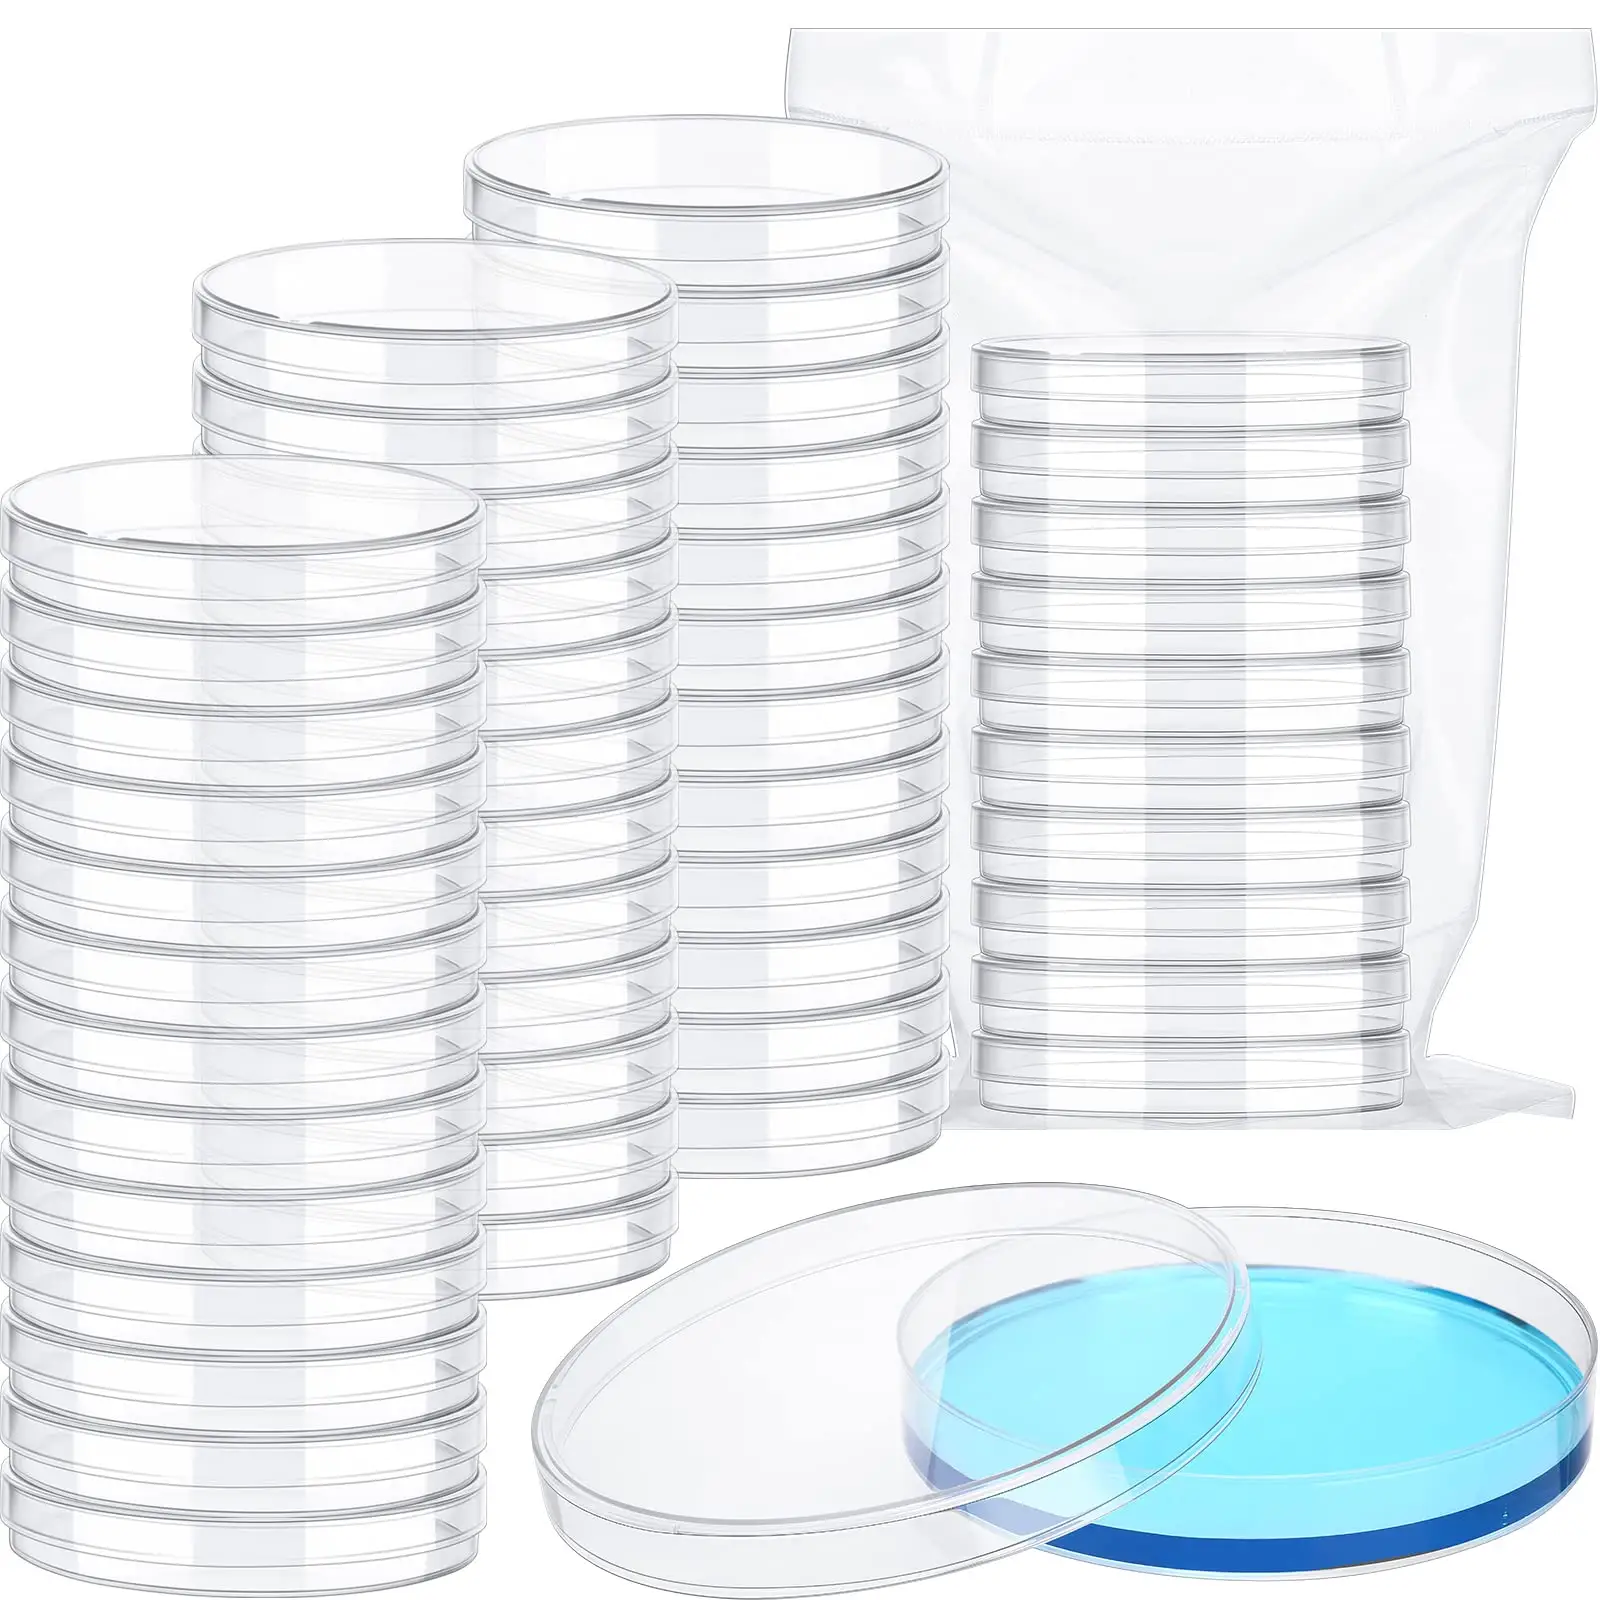 Petri dish 90mm Sterile Tissue Culture Dish for Labs